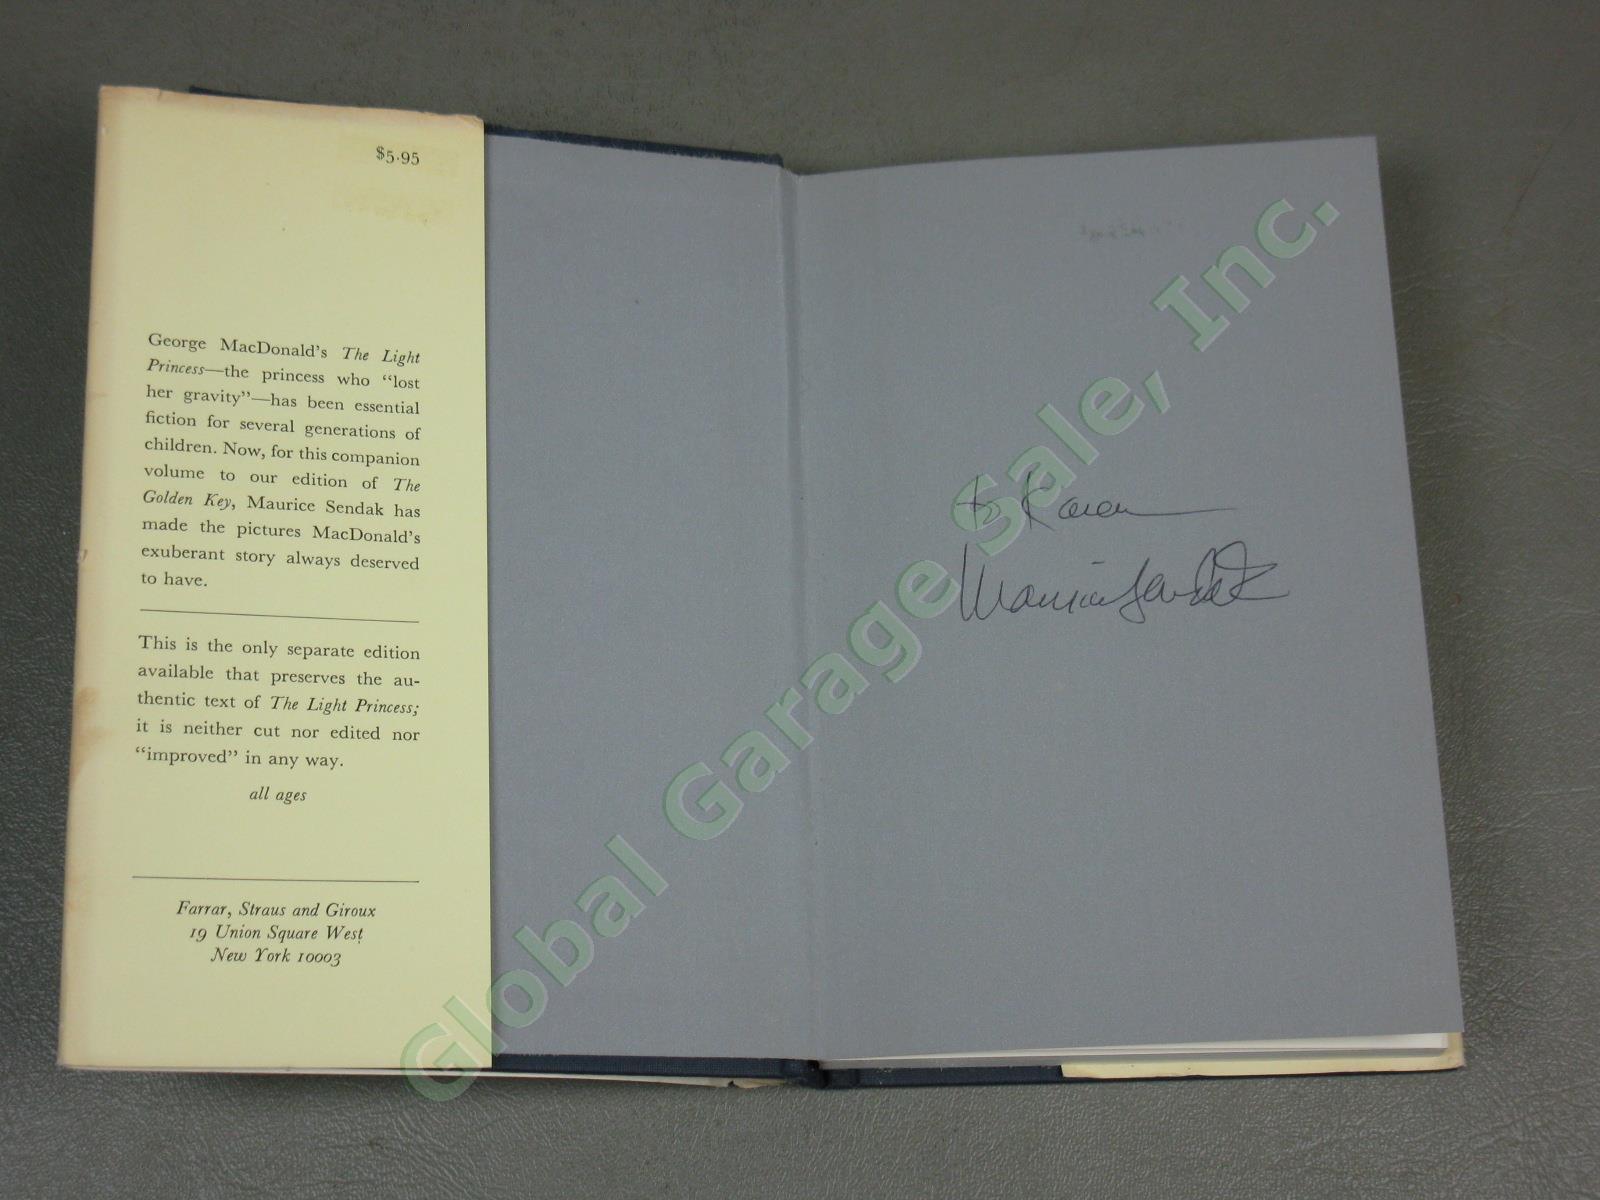 2 Vtg Maurice Sendak Signed Illustrated Books 1970s Light Princess Golden Key NR 13